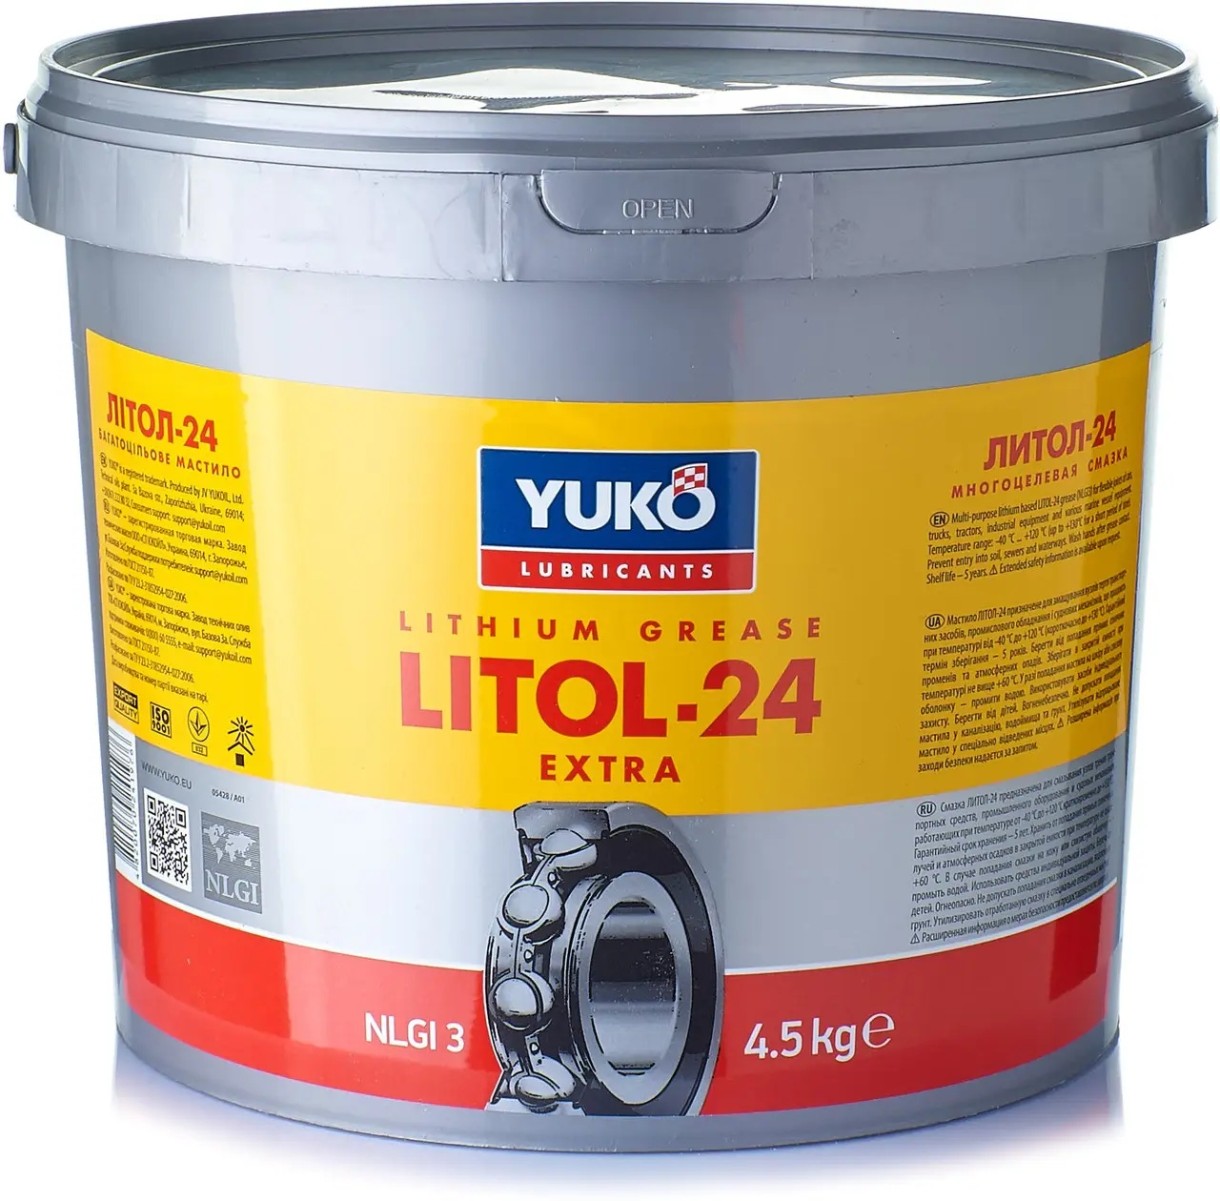 Unsoare Yuko Litol-24 4.5kg